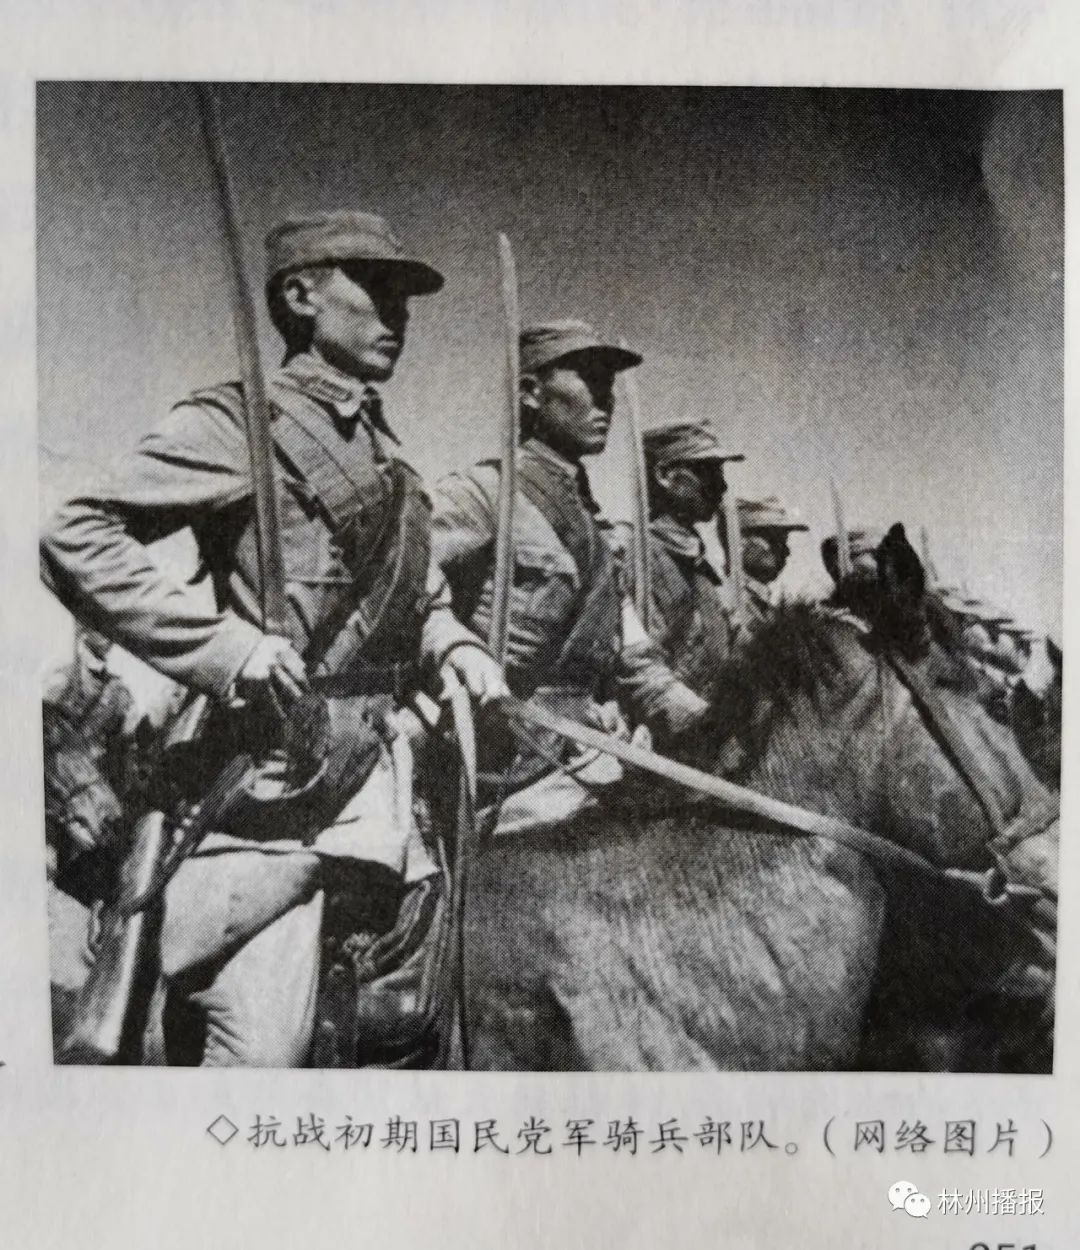 林州党史上鲜为人知的重要事件  抗战时期中央军骑兵团林县起义